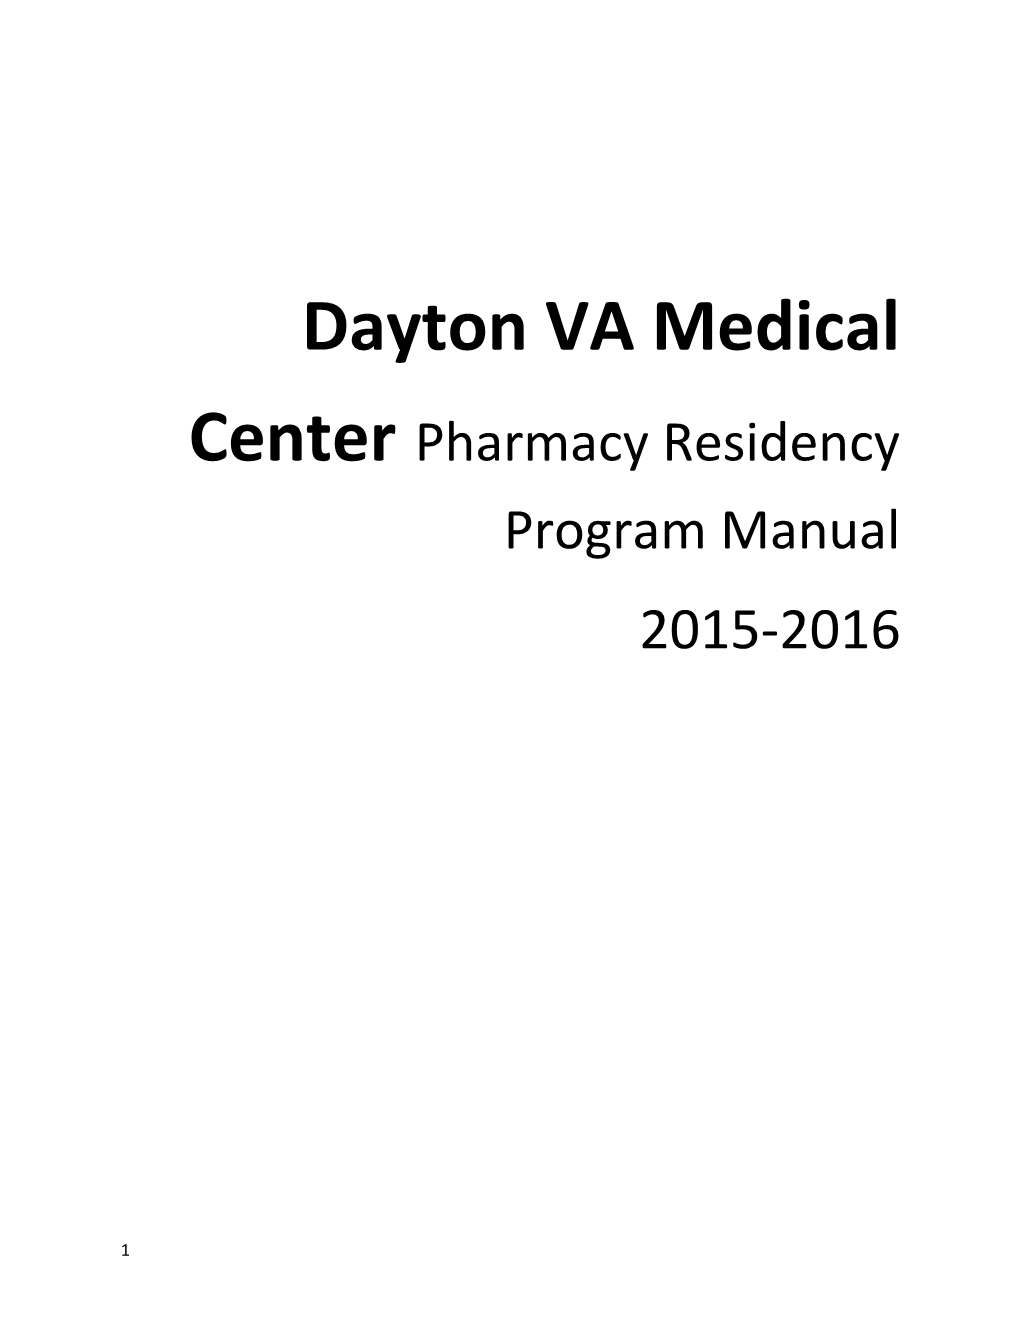 Dayton VA Medical Center Pharmacy Residency Program Manual